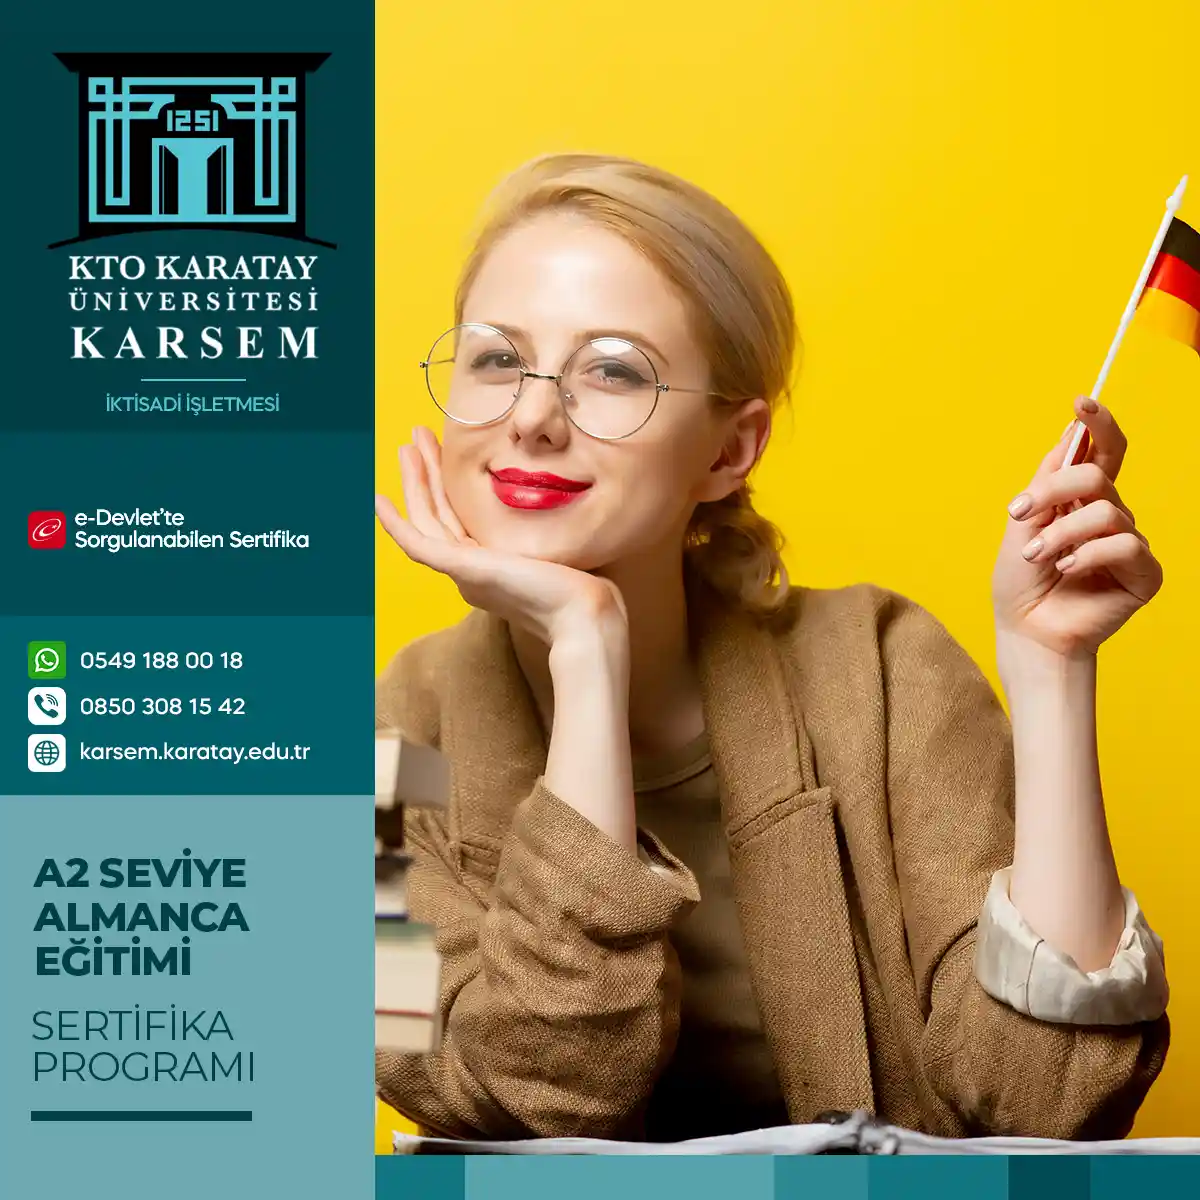 A2 Seviye Almanca Eğitimi Sertifika Programı